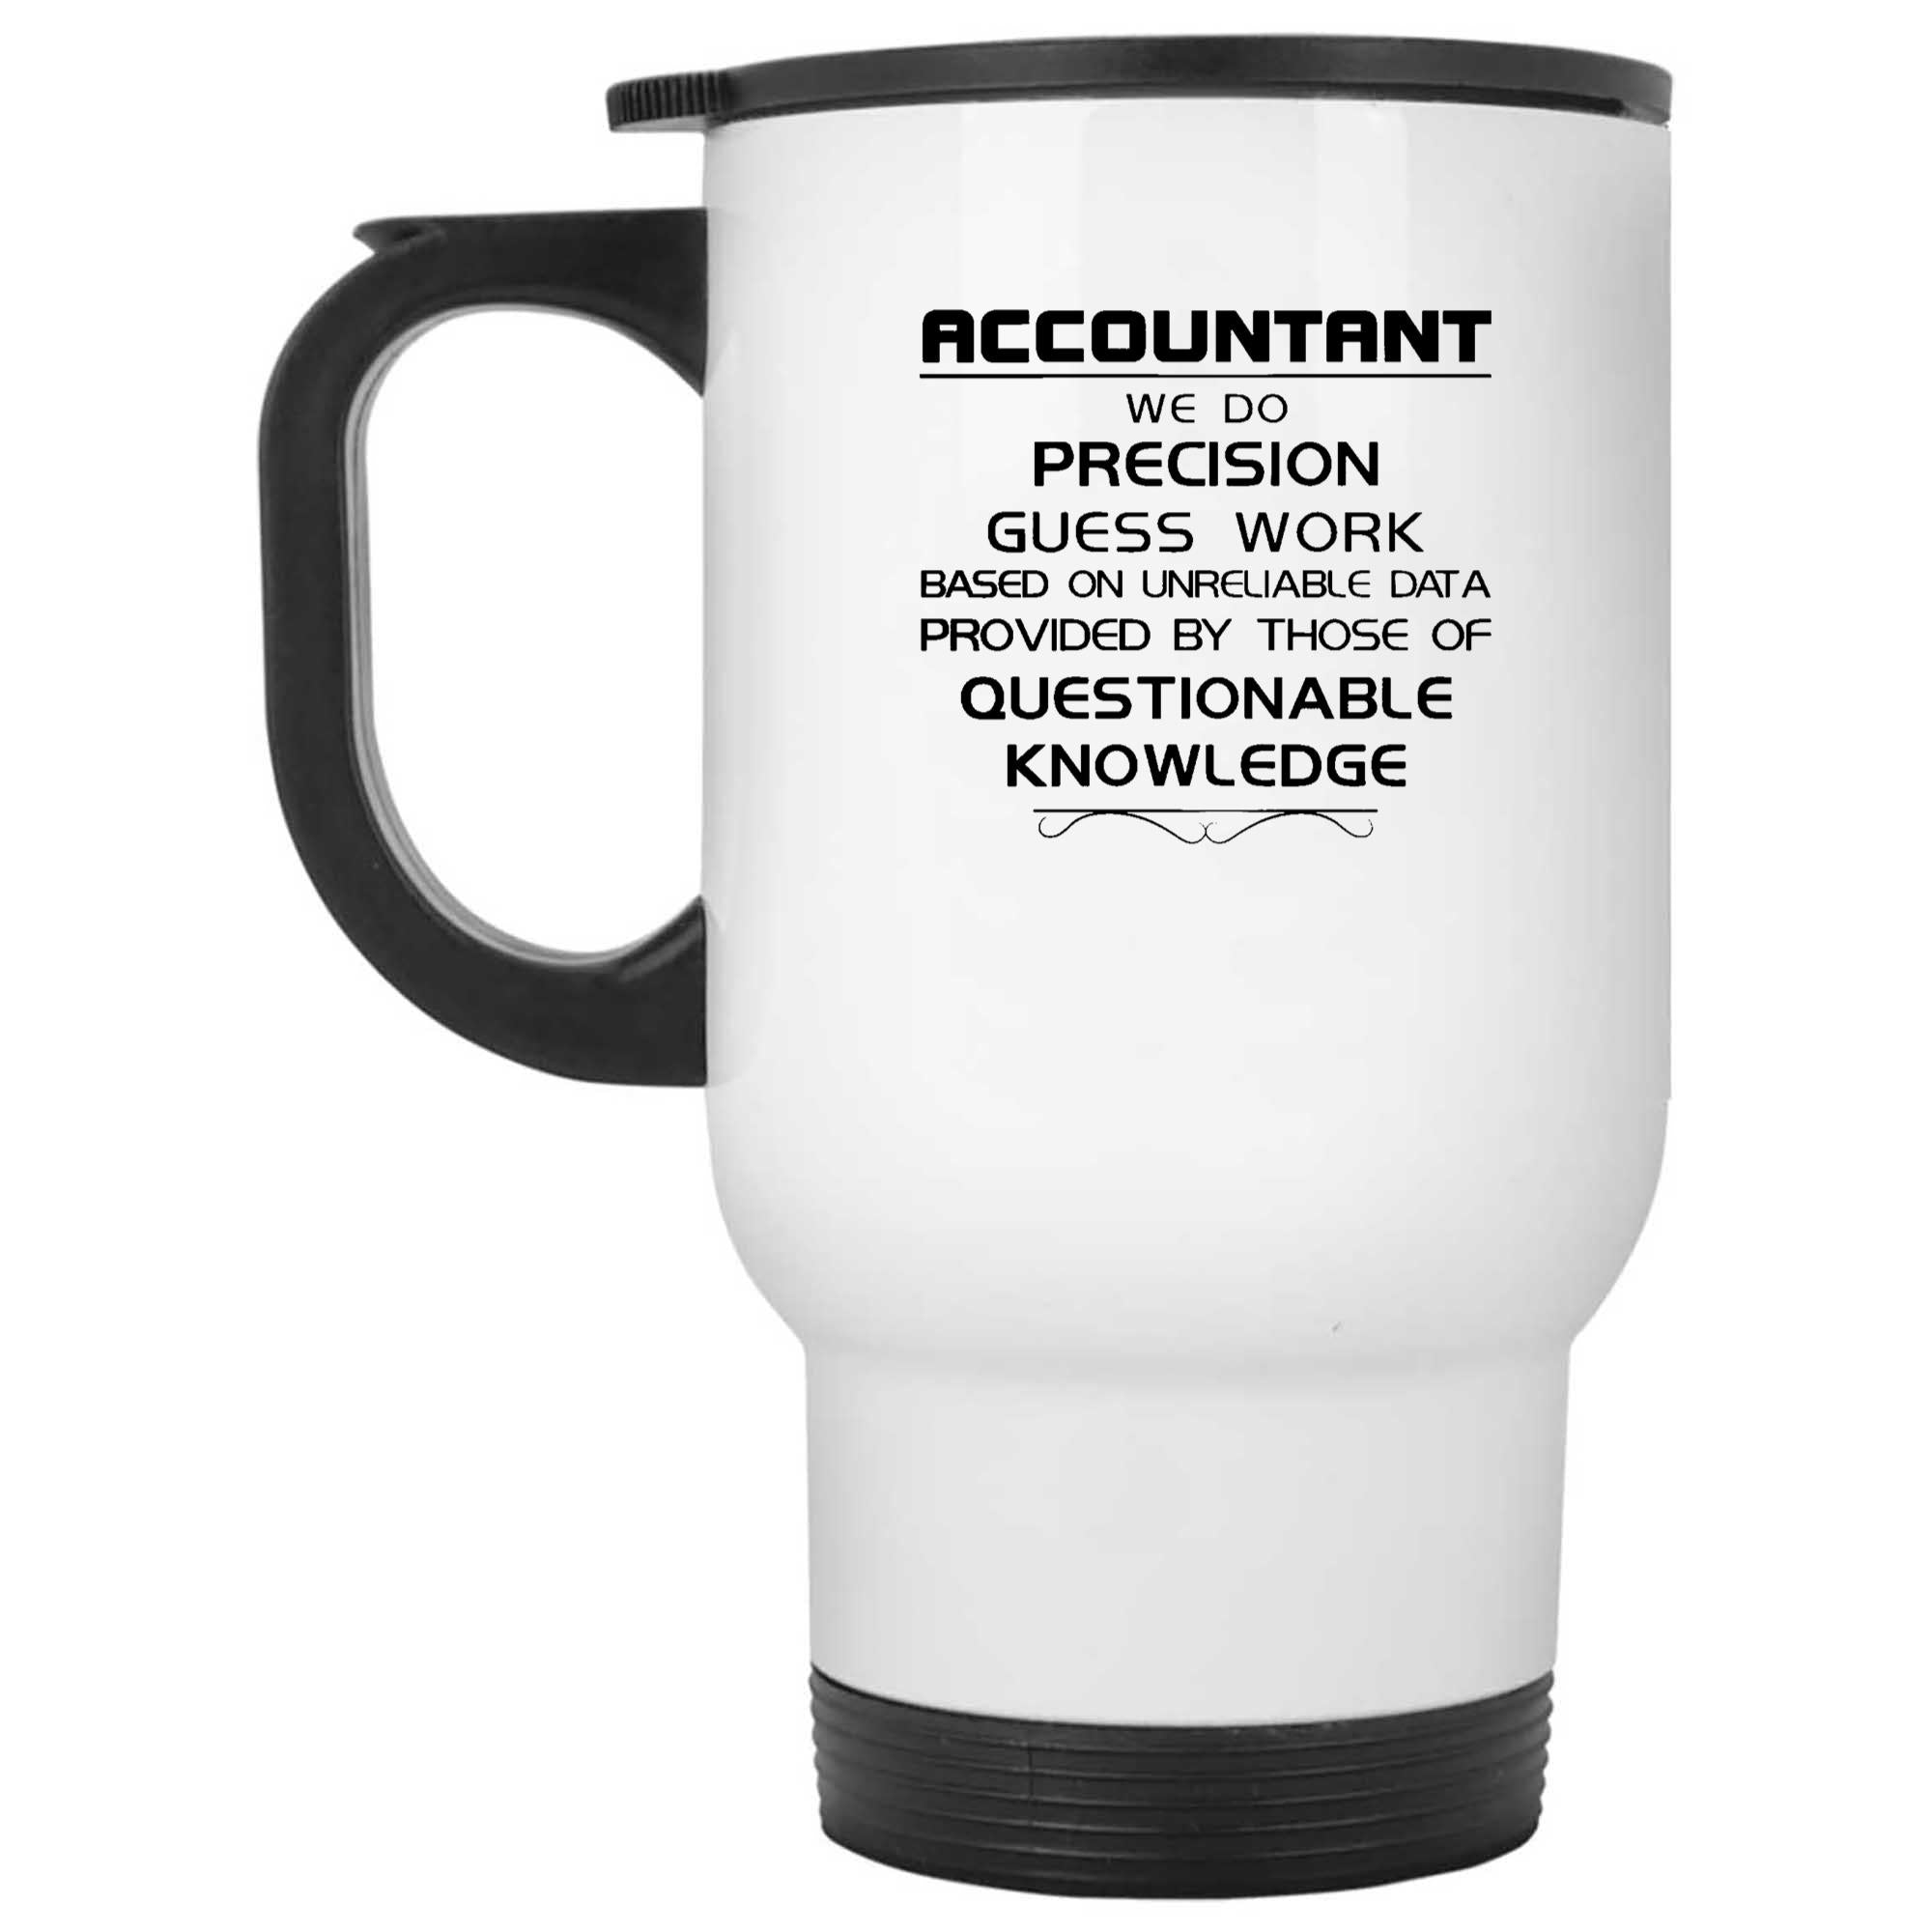 Accountant Mug, Accountant Gift, Coffee Mug, Accountant, Accounting Mug,  Funny Coffee Mug, Funny Accountant Mug, Funny Mug, Accounting, CPA - Etsy